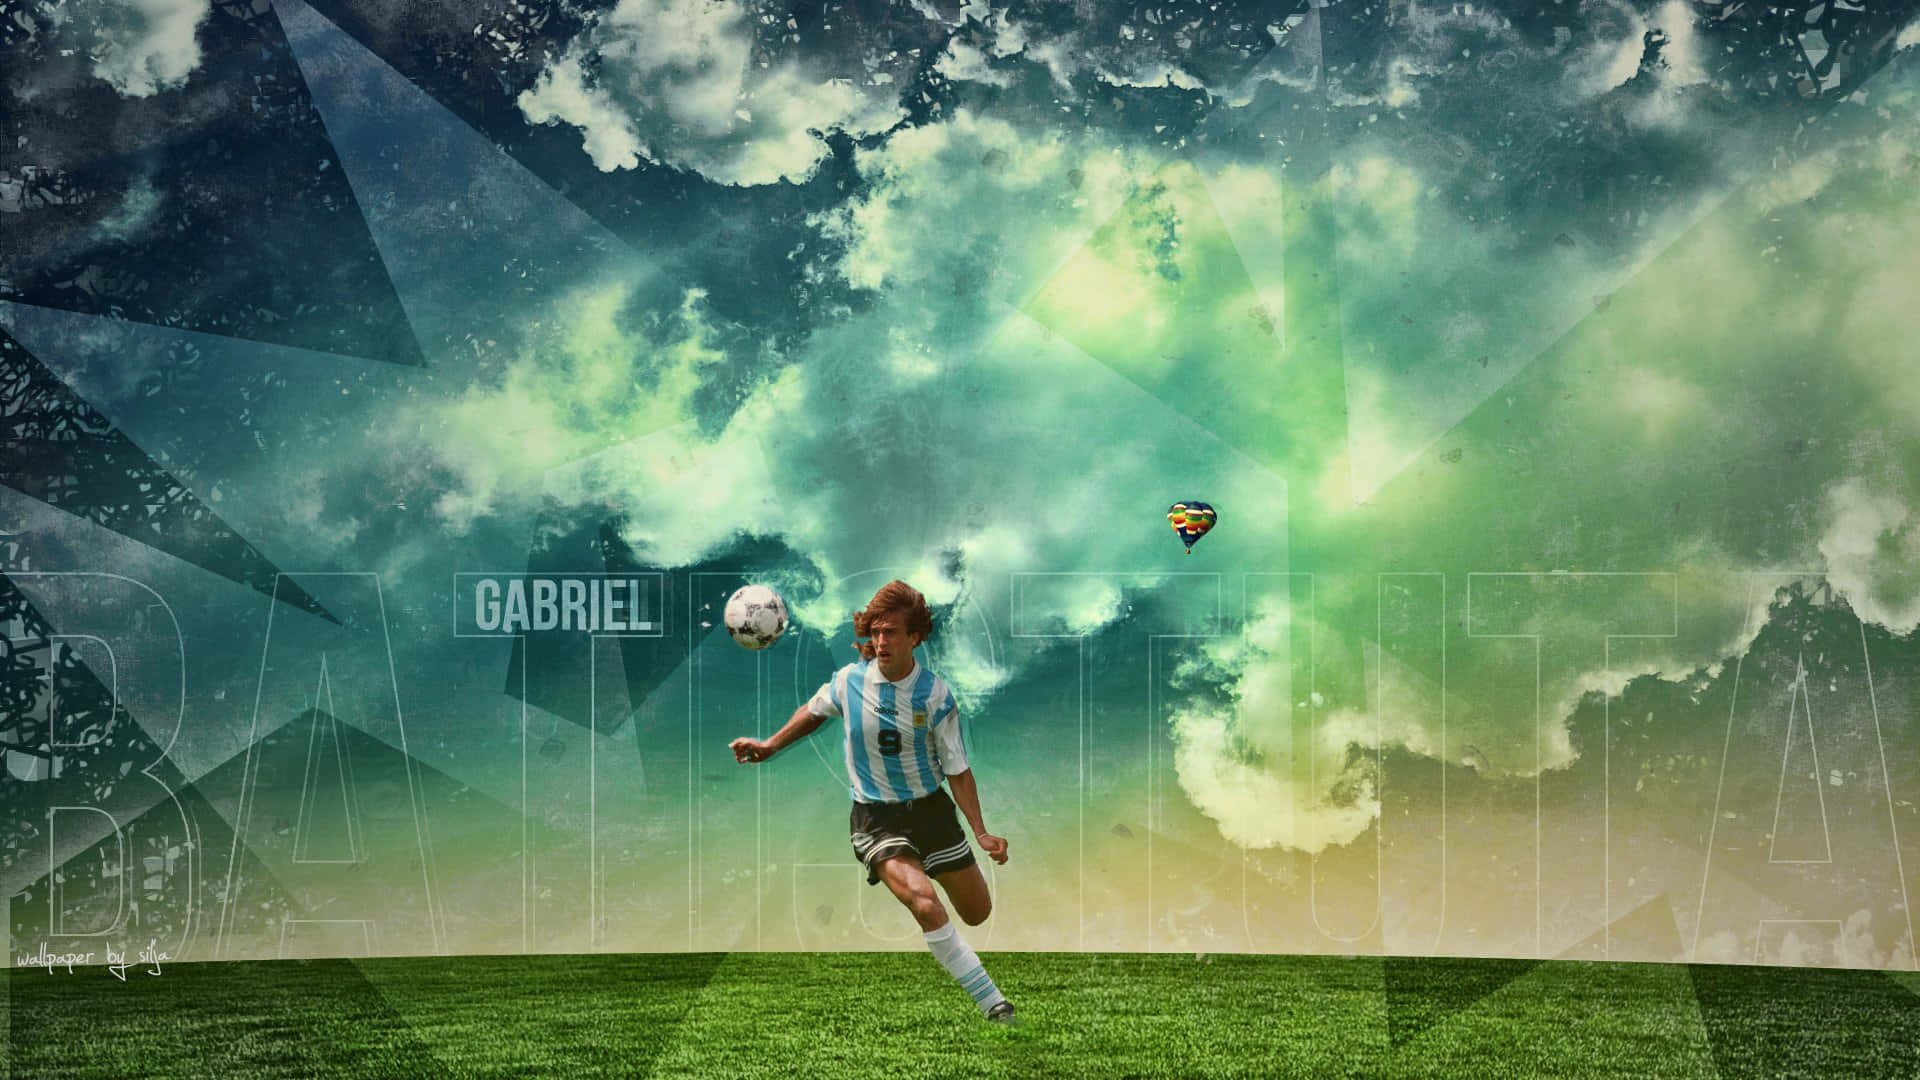 Argentinischerfußballspieler Gabriel Batistuta Grafikdesign Wallpaper